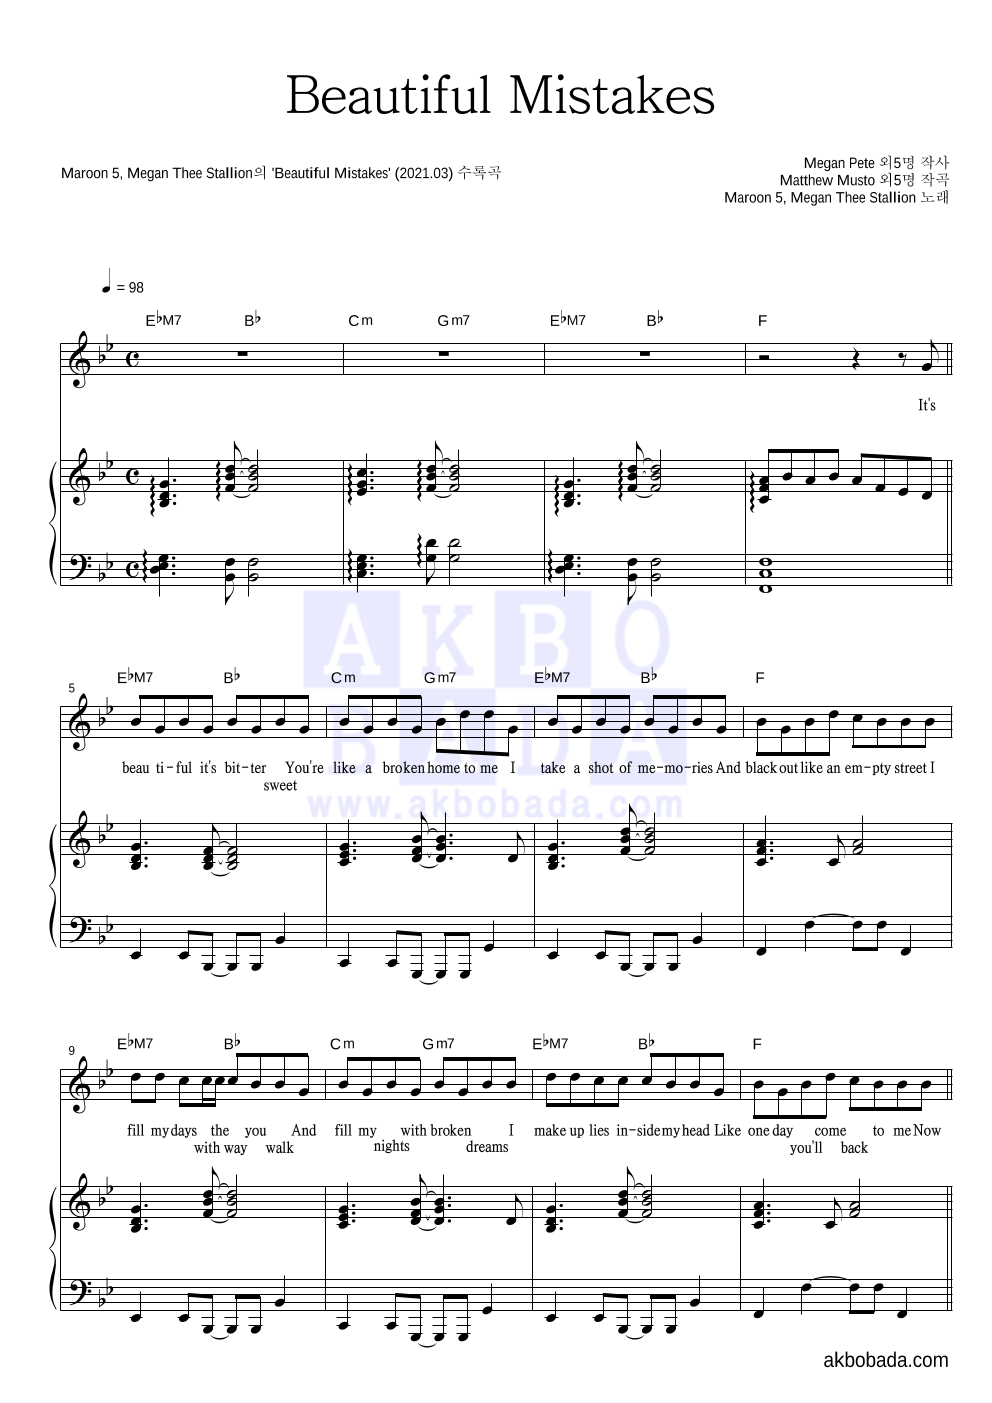 Maroon5,Megan Thee Stallion - Beautiful Mistakes 피아노 3단 악보 